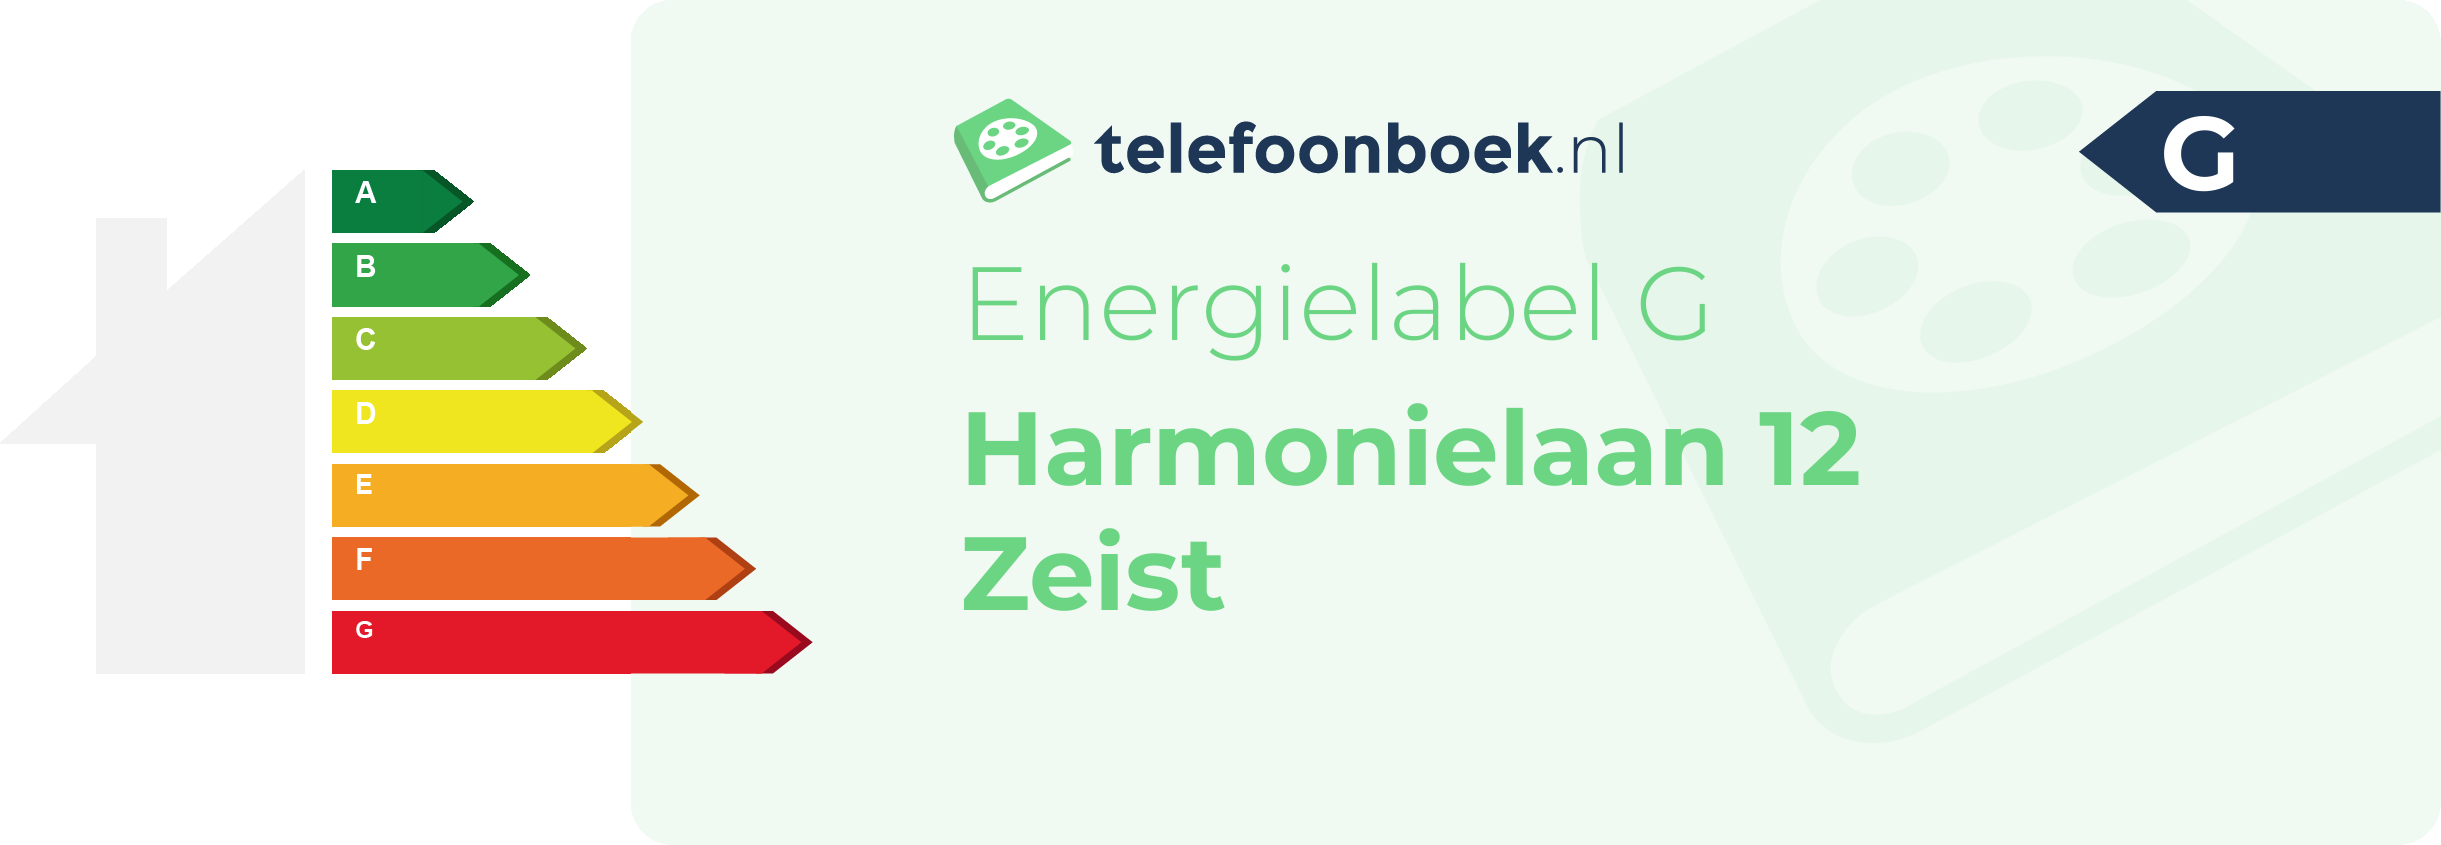 Energielabel Harmonielaan 12 Zeist